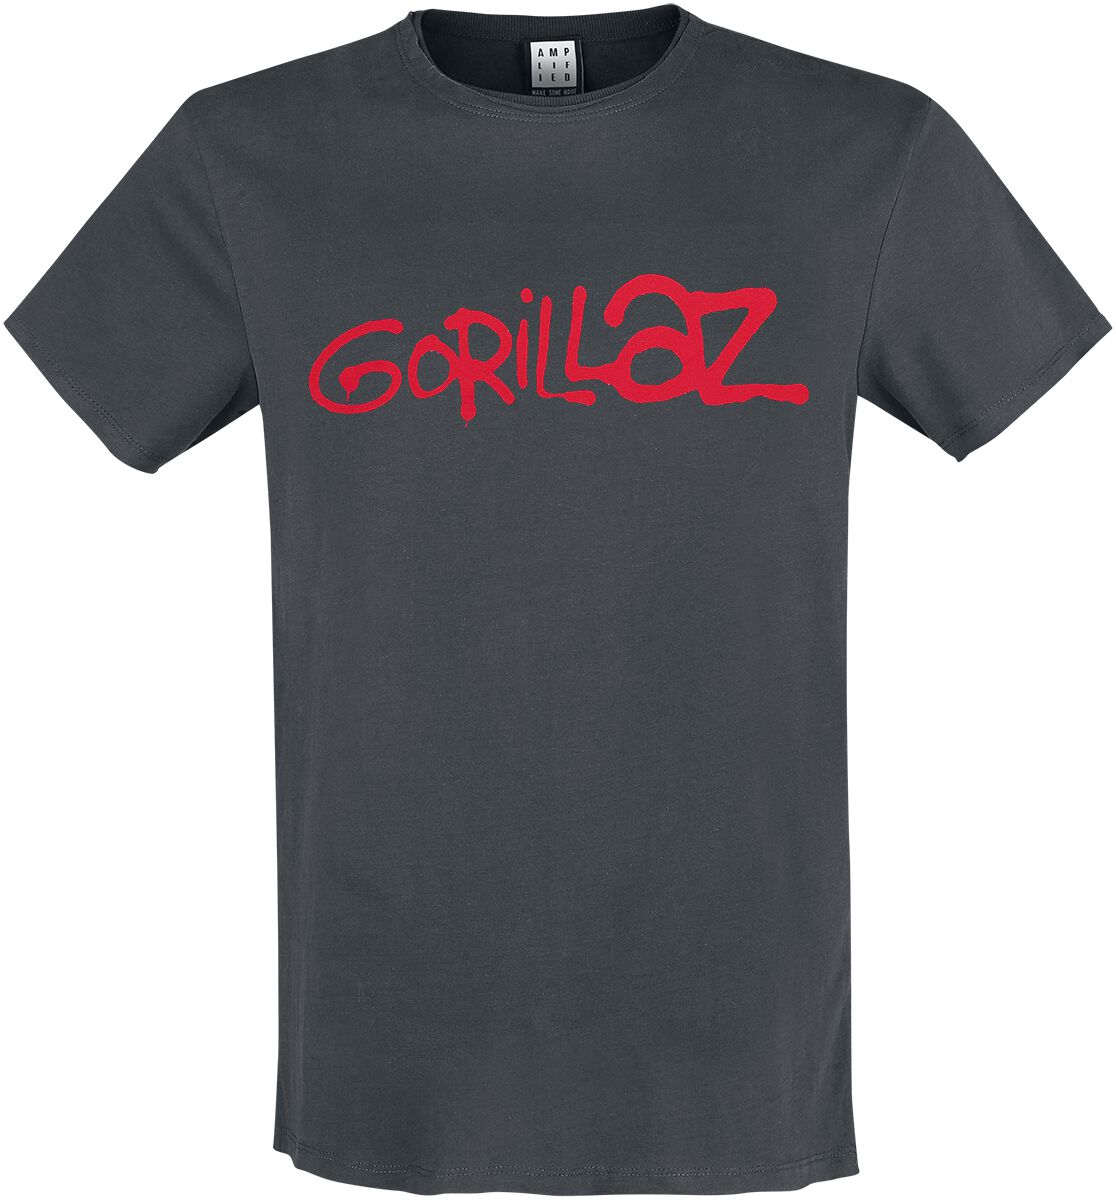 Gorillaz T-Shirt - Amplified Collection - Logo - S - für Männer - Größe S - charcoal  - Lizenziertes Merchandise!